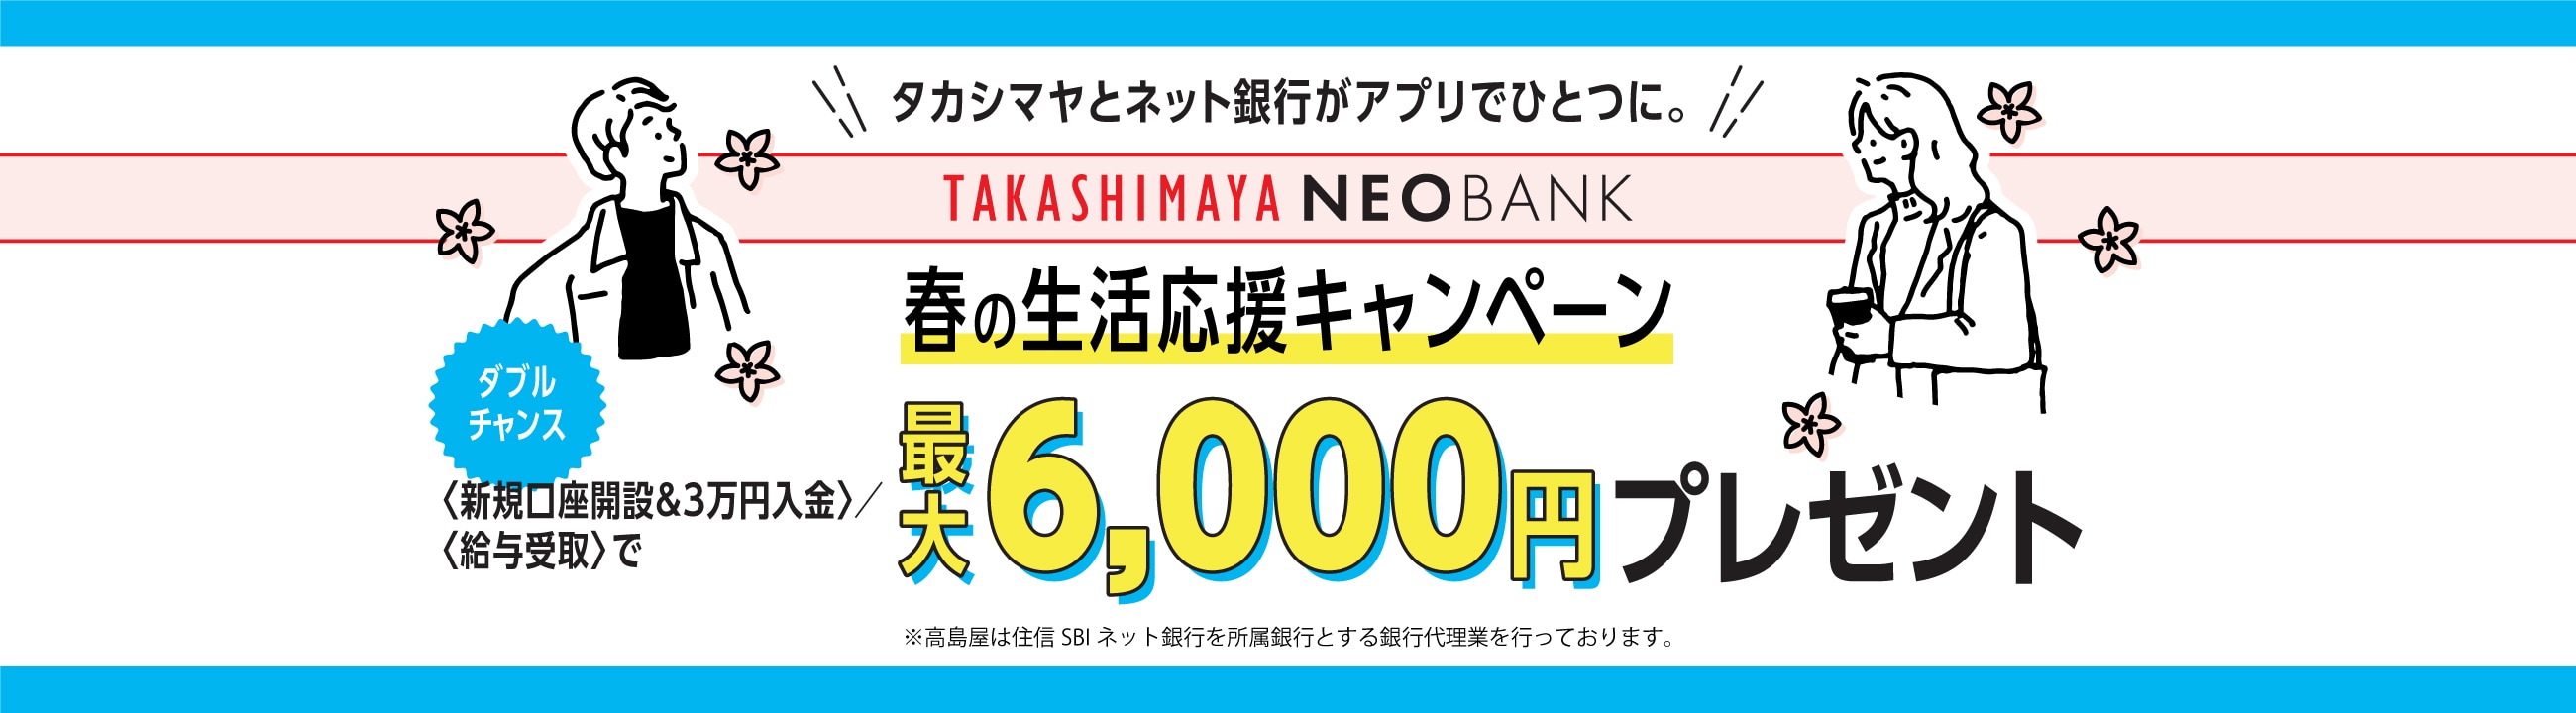 タカシマヤとネット銀行がアプリでひとつに。春の生活応援キャンペーン 最大6,000円プレゼント